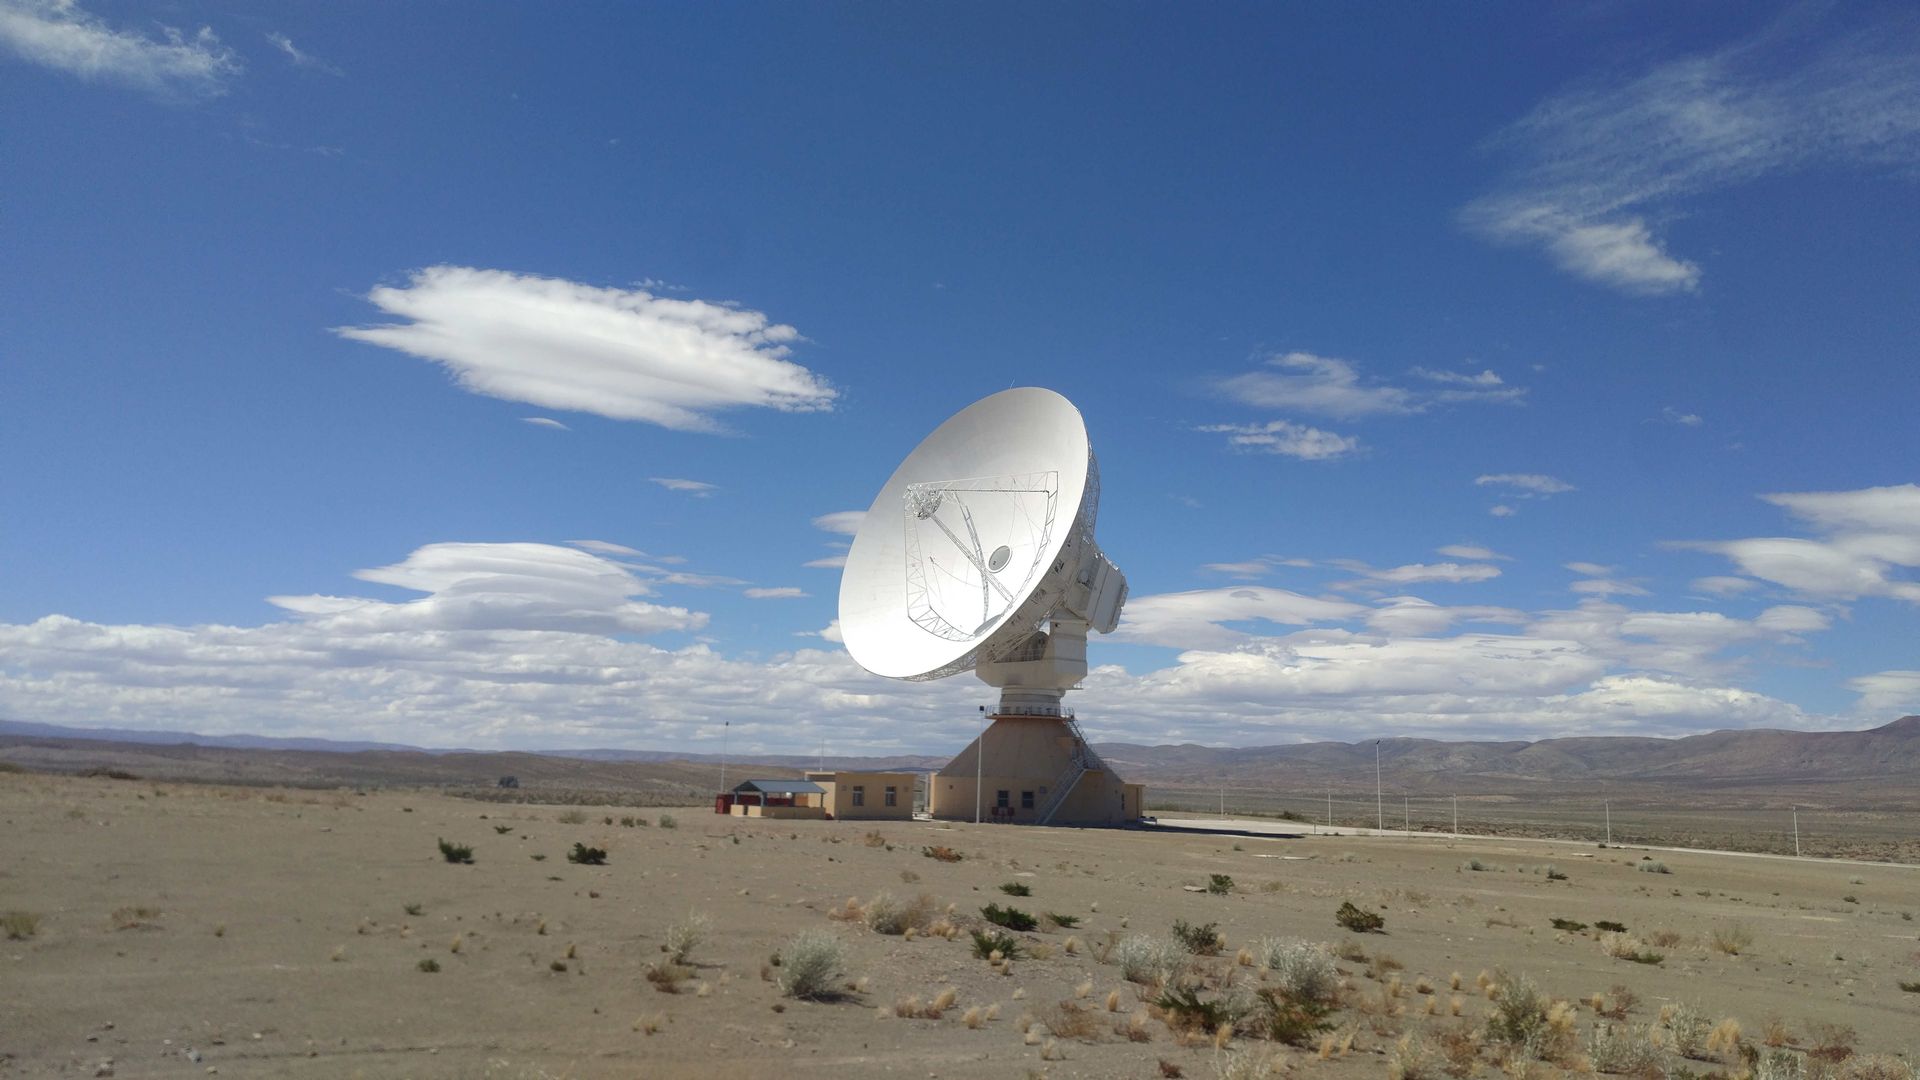 En las provincias de Mendoza y Neuquén, se ubican dos estaciones para el seguimiento de misiones de exploración del espacio profundo. Foto: www.argentina.gob.ar